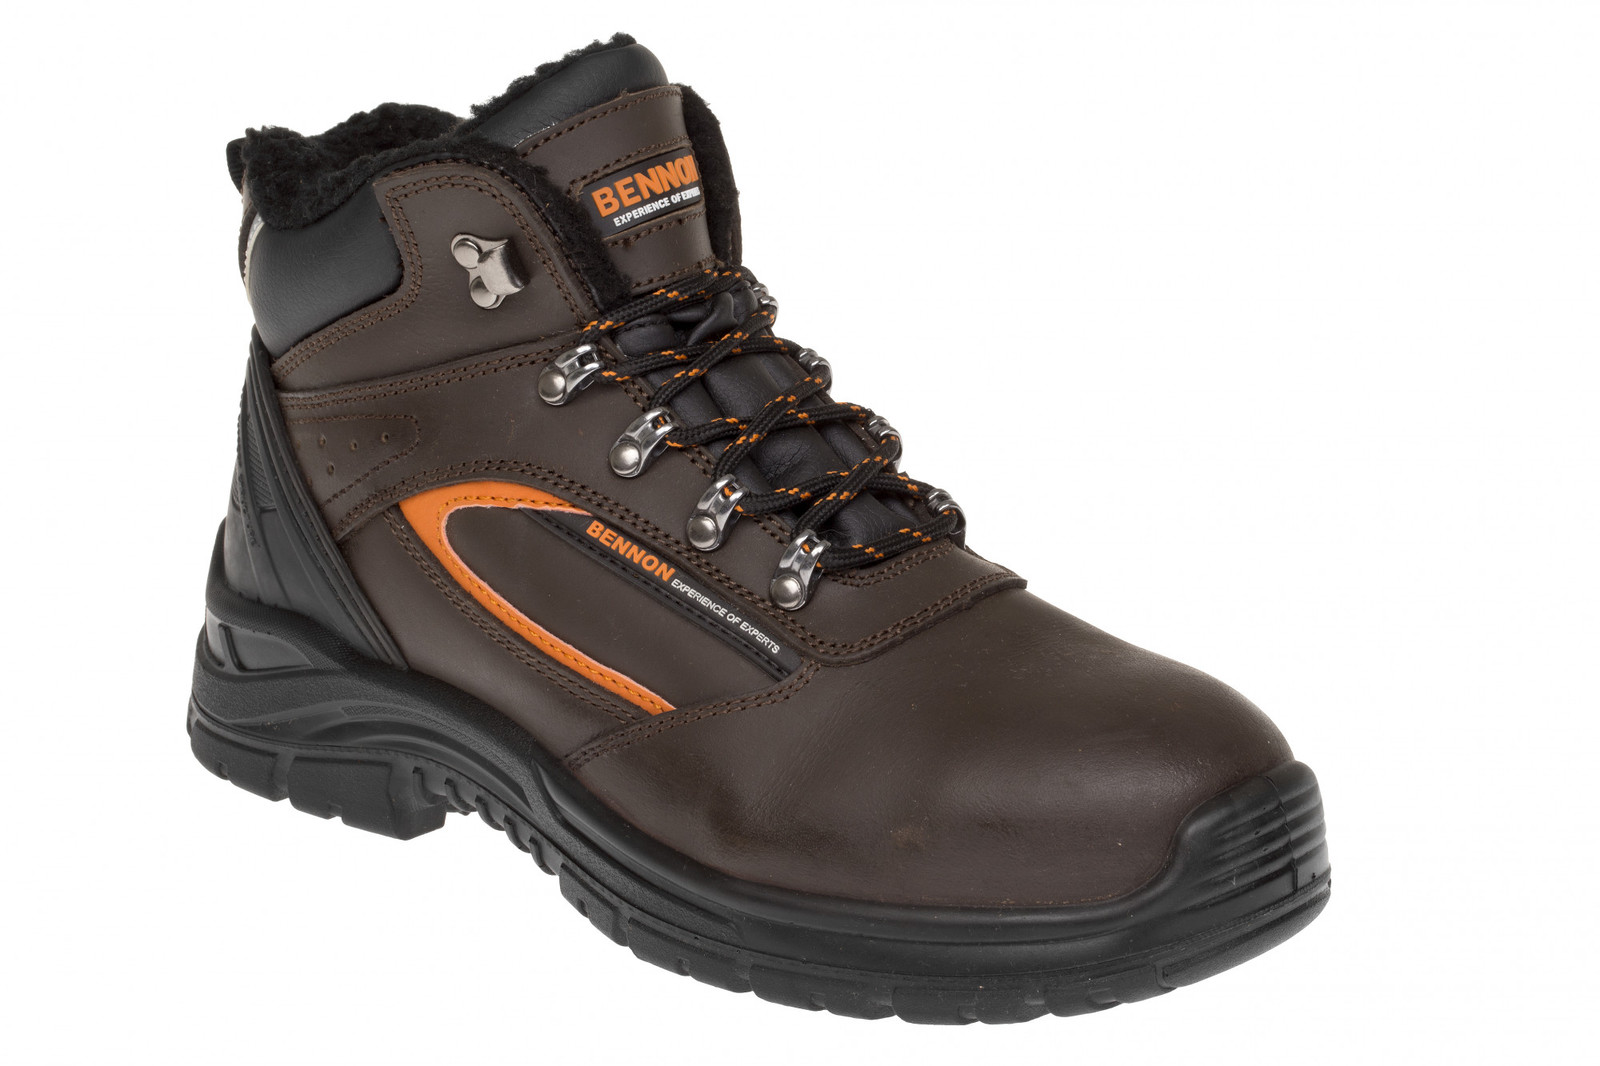 Zimná bezpečnostná obuv Bennon Farmis S3 Winter - veľkosť: 41, farba: hnedá